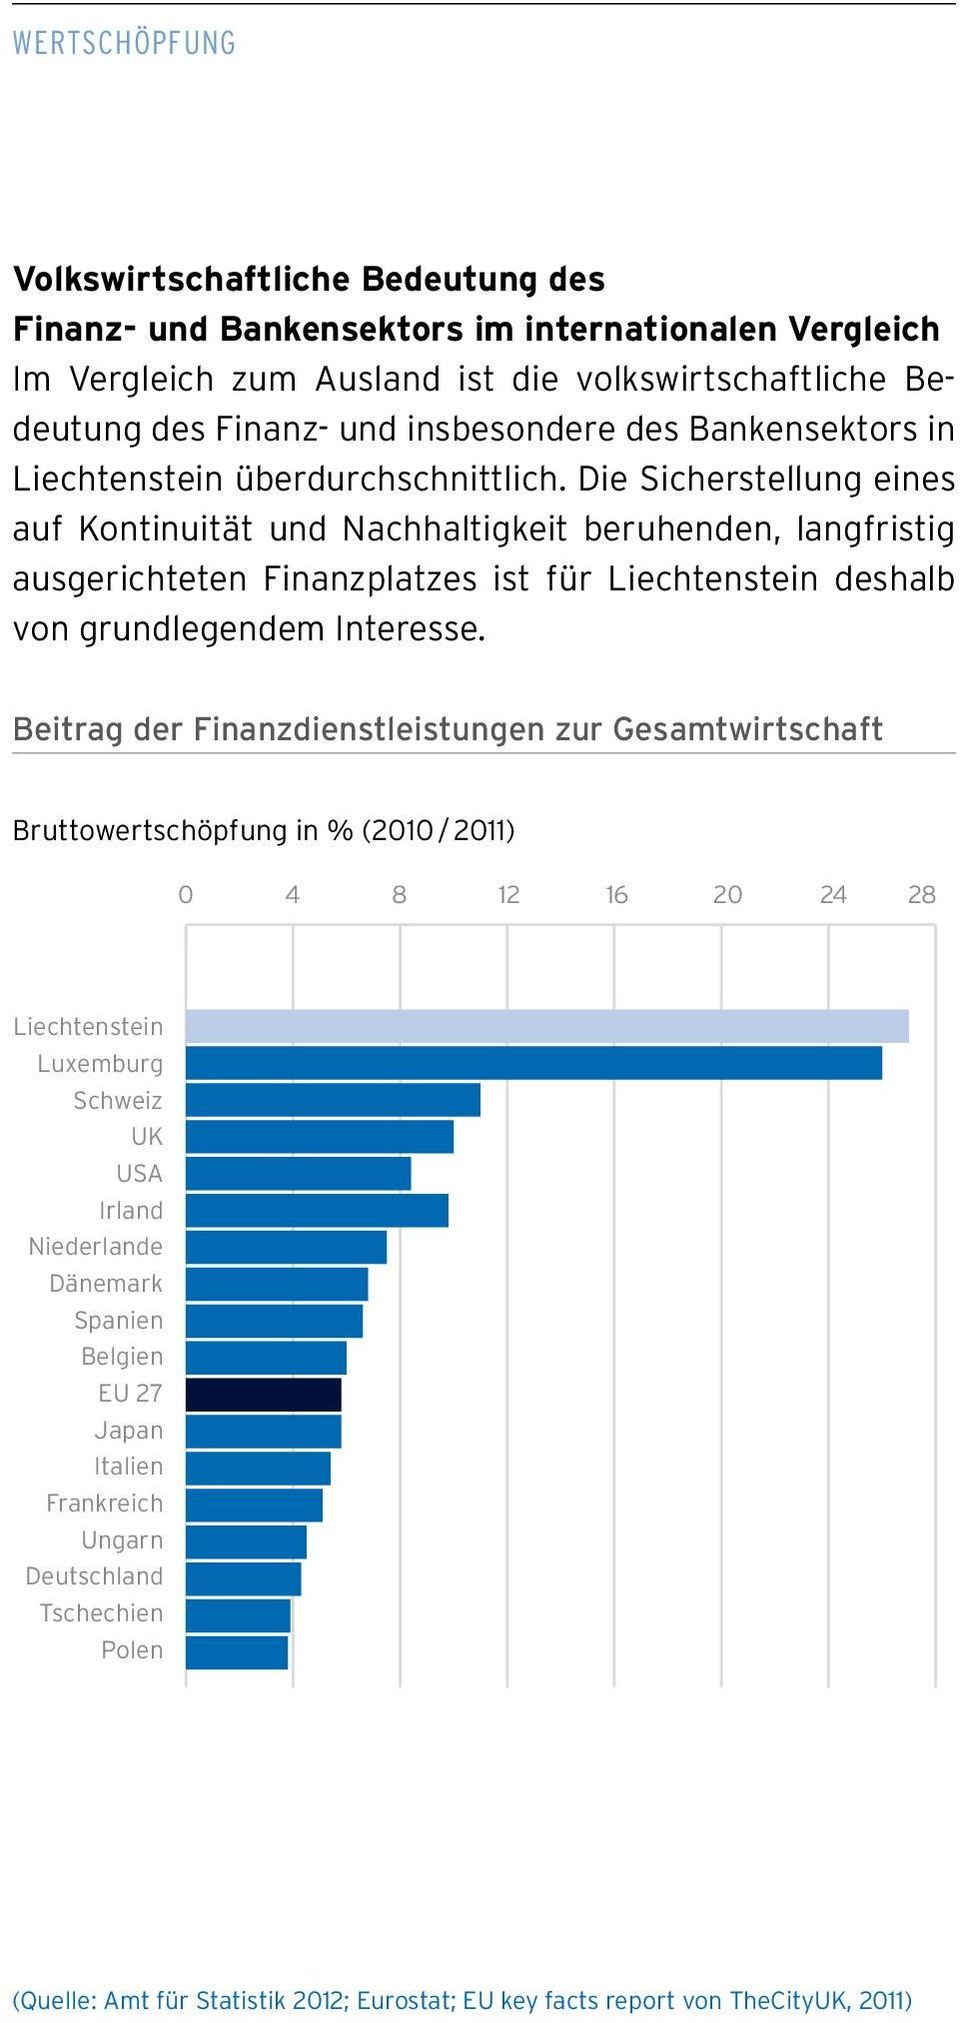 Die Sicherstellung eines auf Kontinuität und Nachhaltigkeit beruhenden, langfristig ausgerichteten Finanzplatzes ist für Liechtenstein deshalb von grundlegendem Interesse.